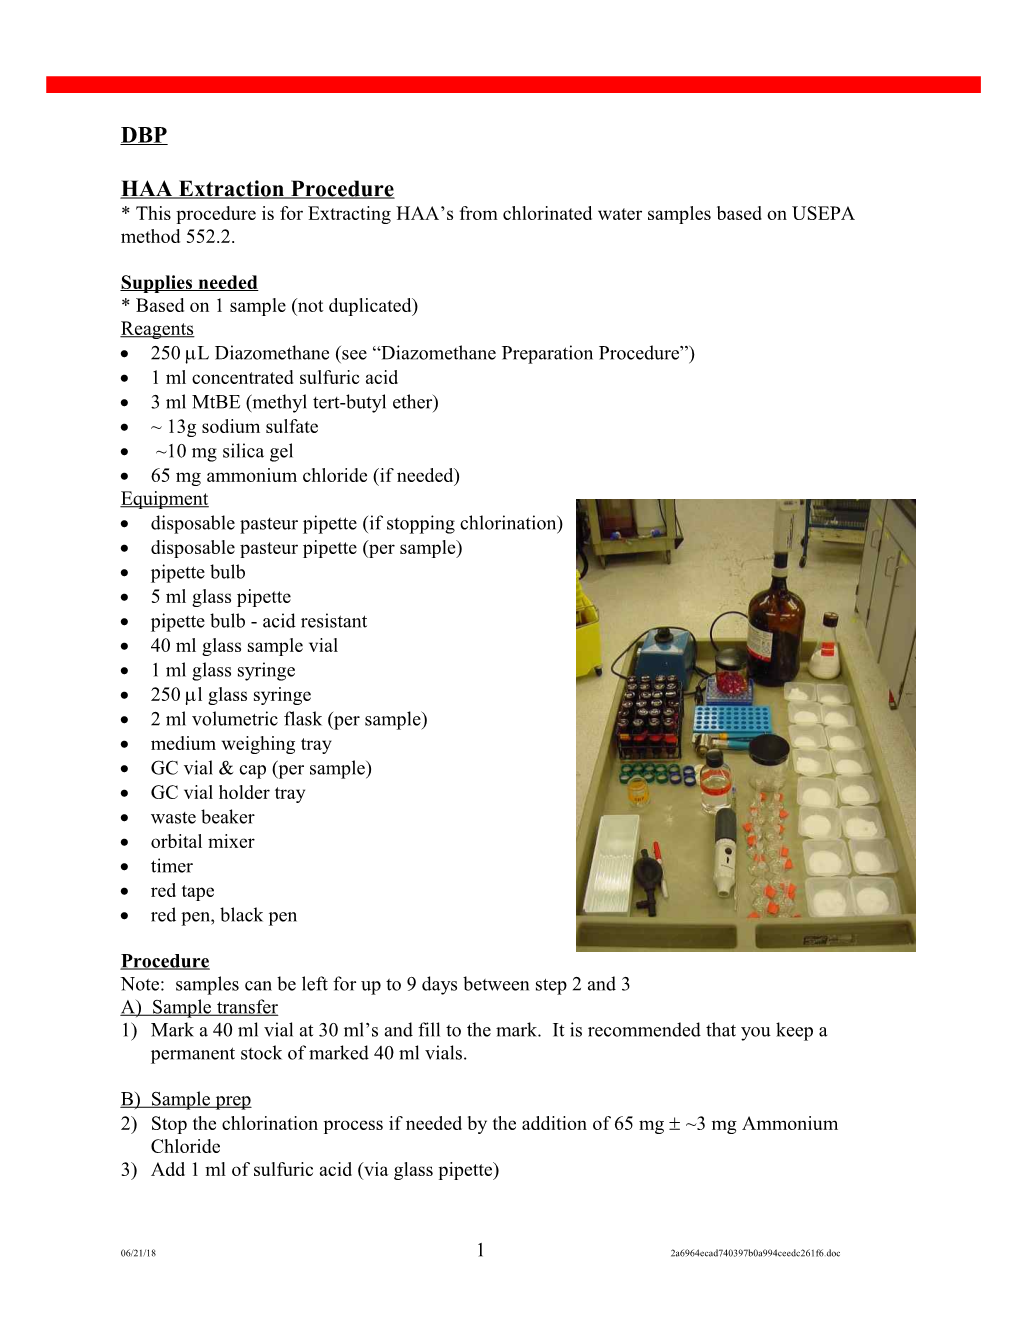 HAA Extraction Procedure